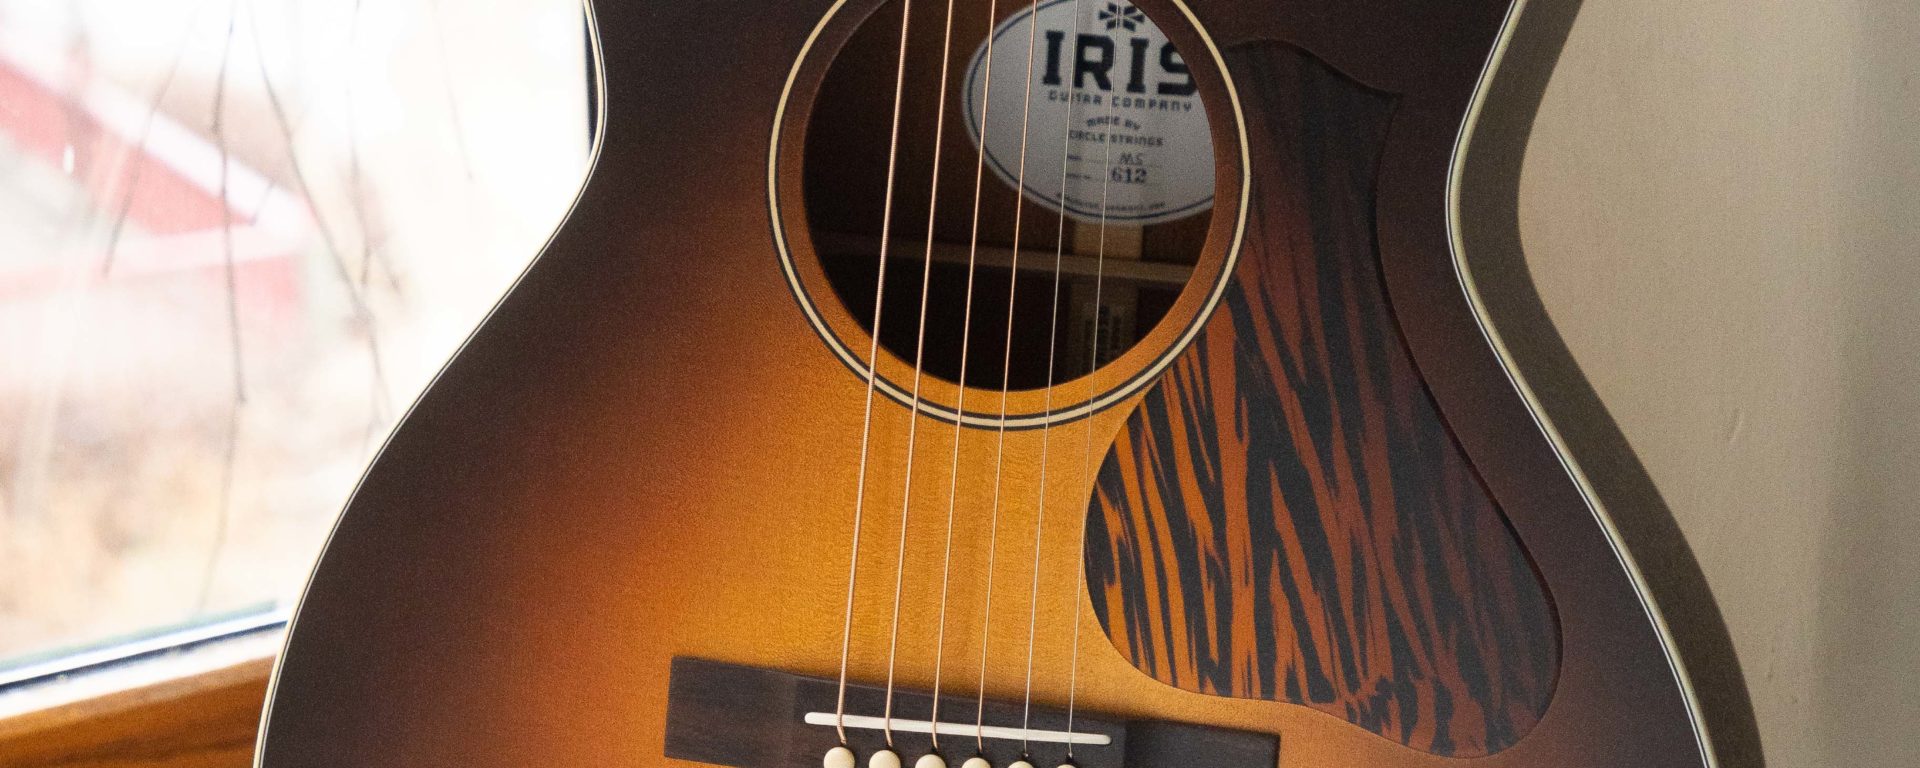 Iris Guitars